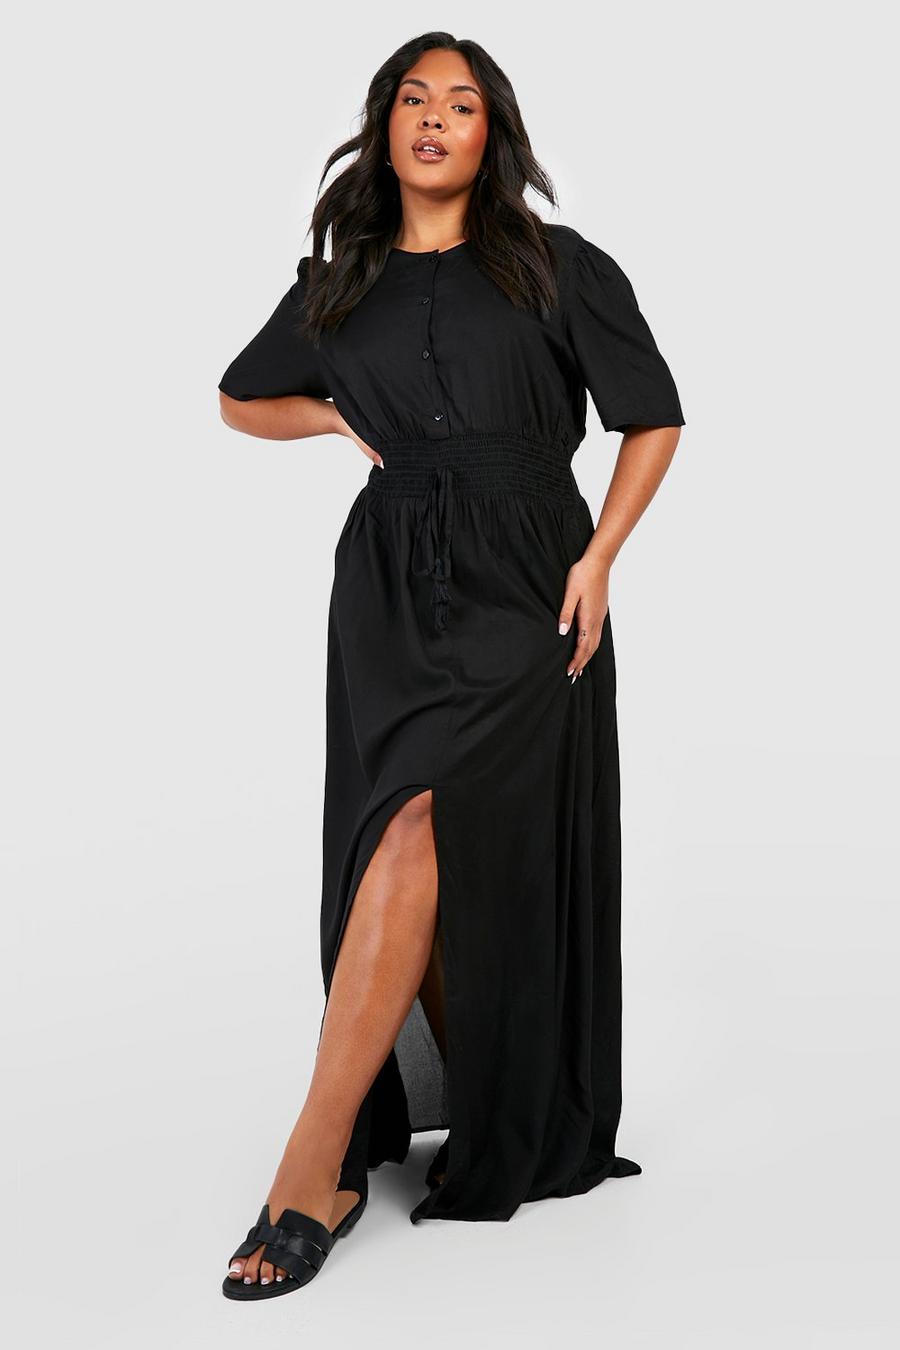 שחור negro שמלת מקסי עם קפלים במותן מידות גדולות